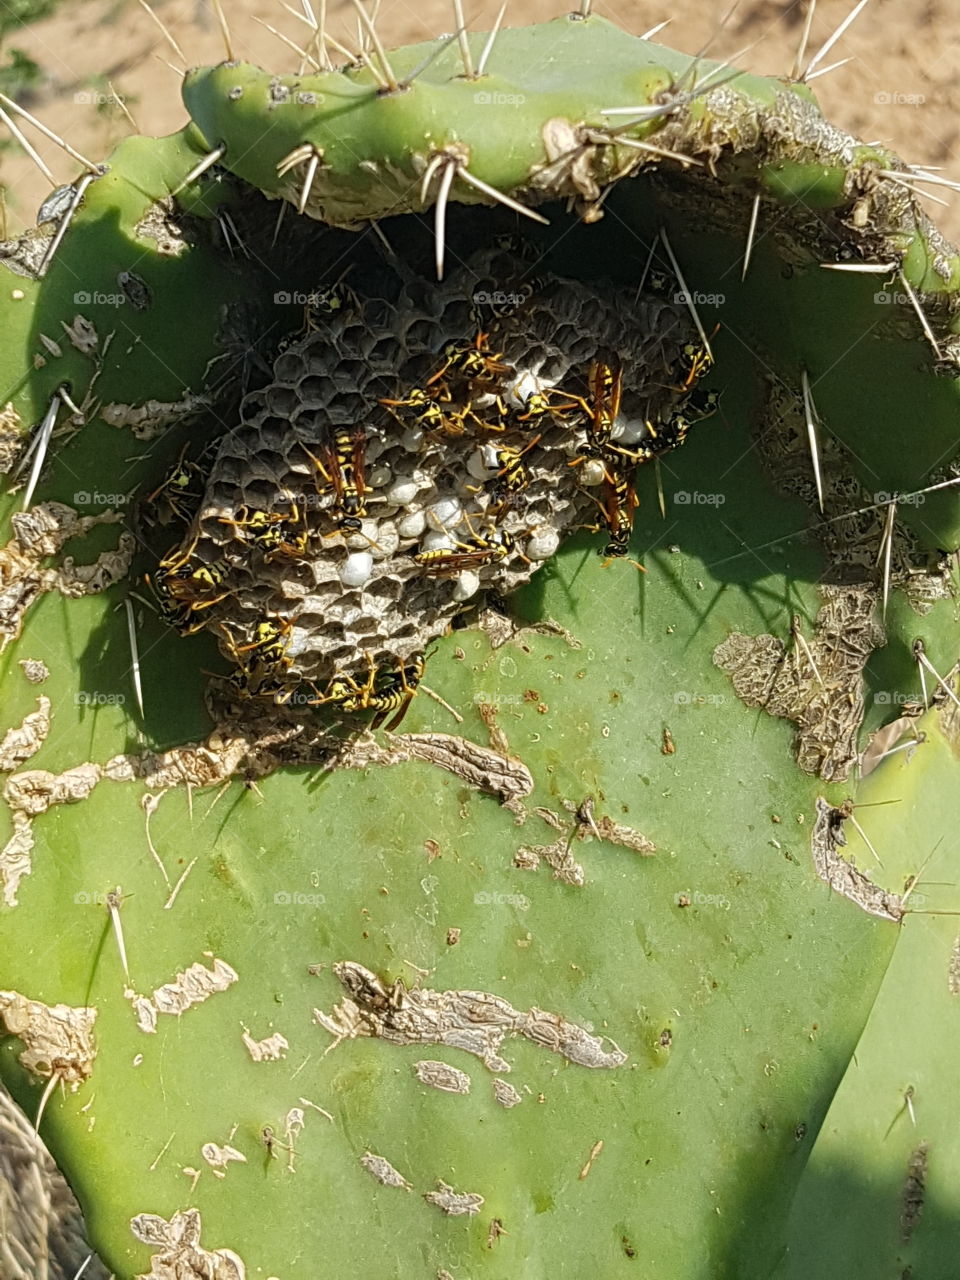 Wespennest im Kaktus